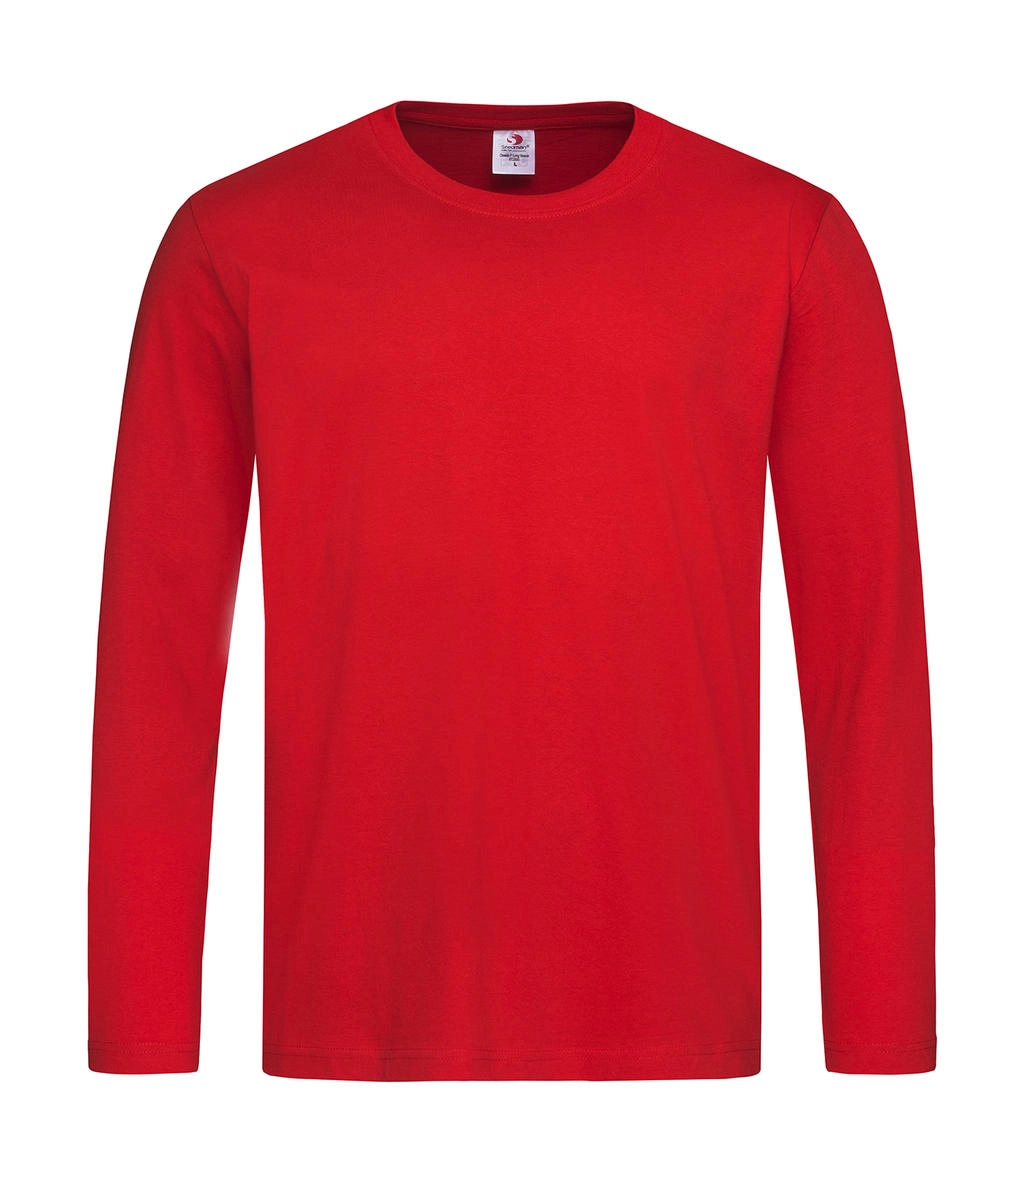 Classic-T Long Sleeve zum Besticken und Bedrucken in der Farbe Scarlet Red mit Ihren Logo, Schriftzug oder Motiv.